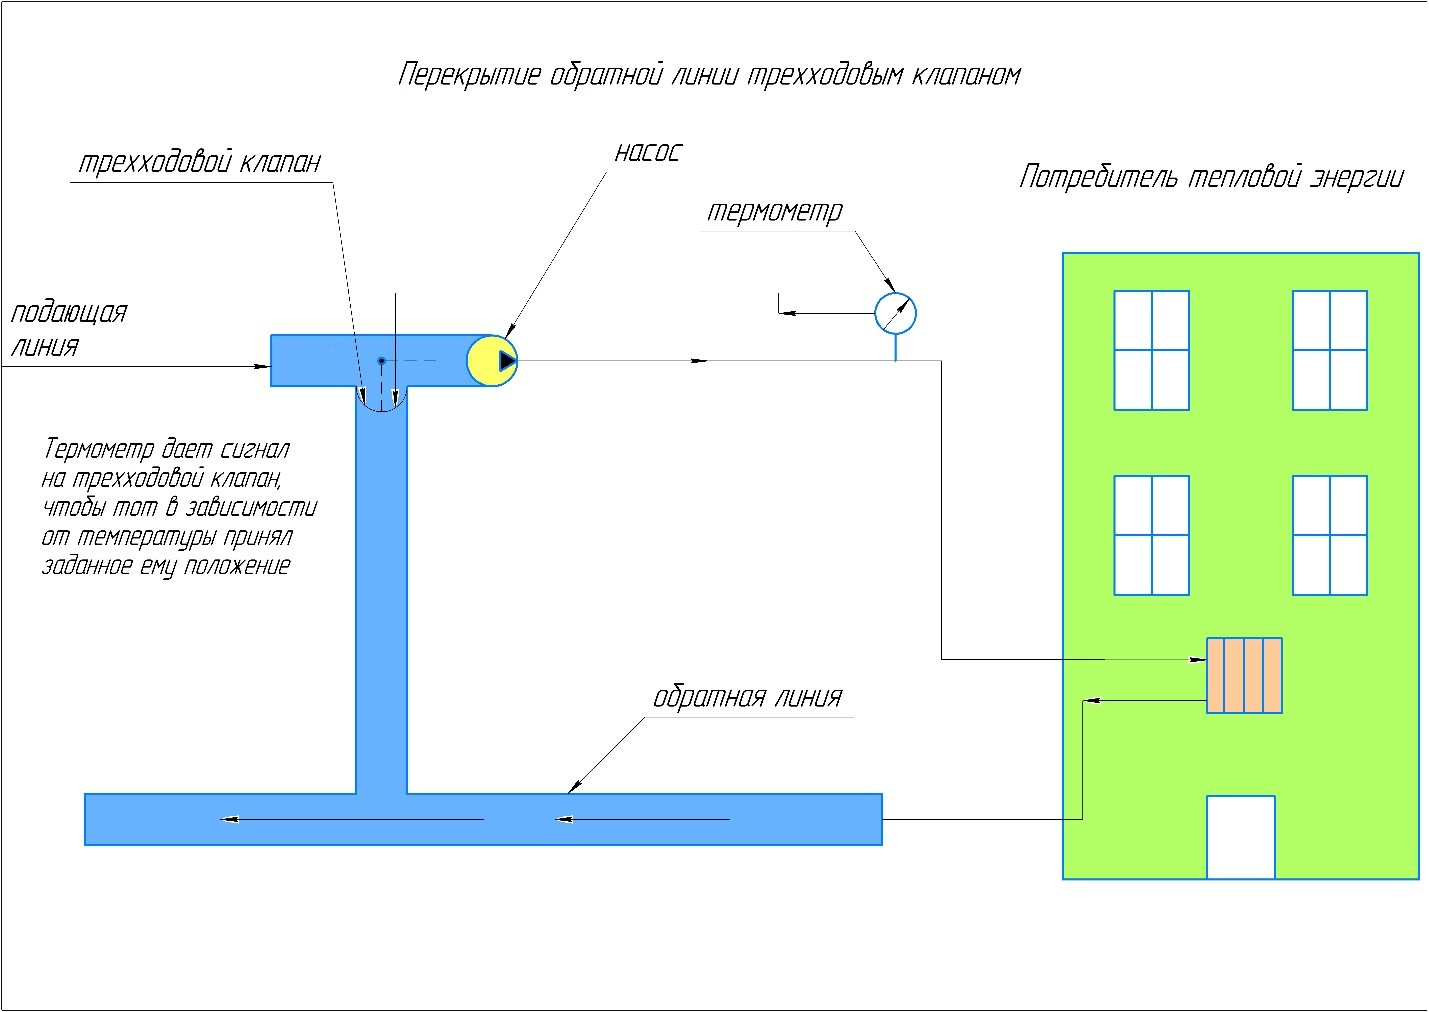 Схема работы трёхходового клапана в индивидуальном тепловом пункте.